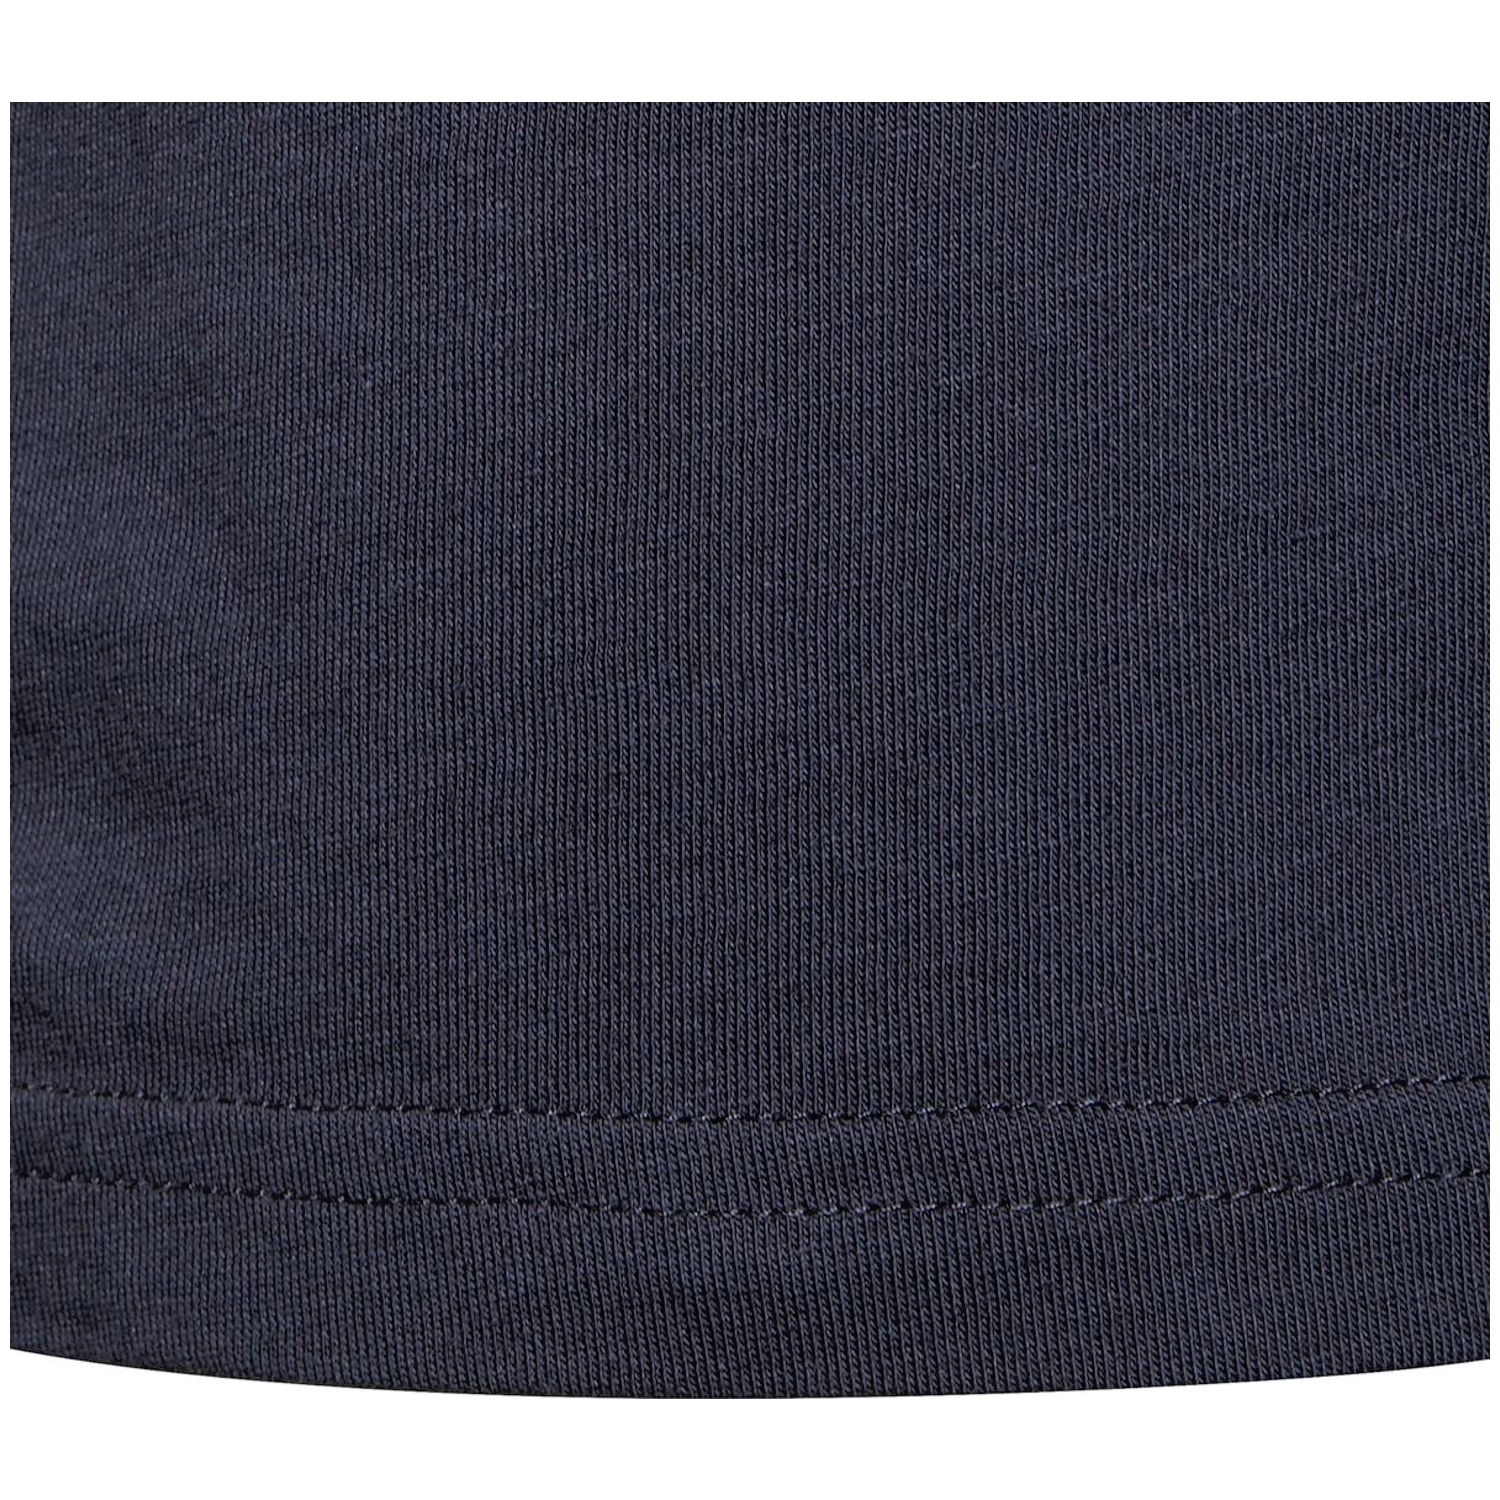 Adidas Essentials Logo T-Shirt Mädchen